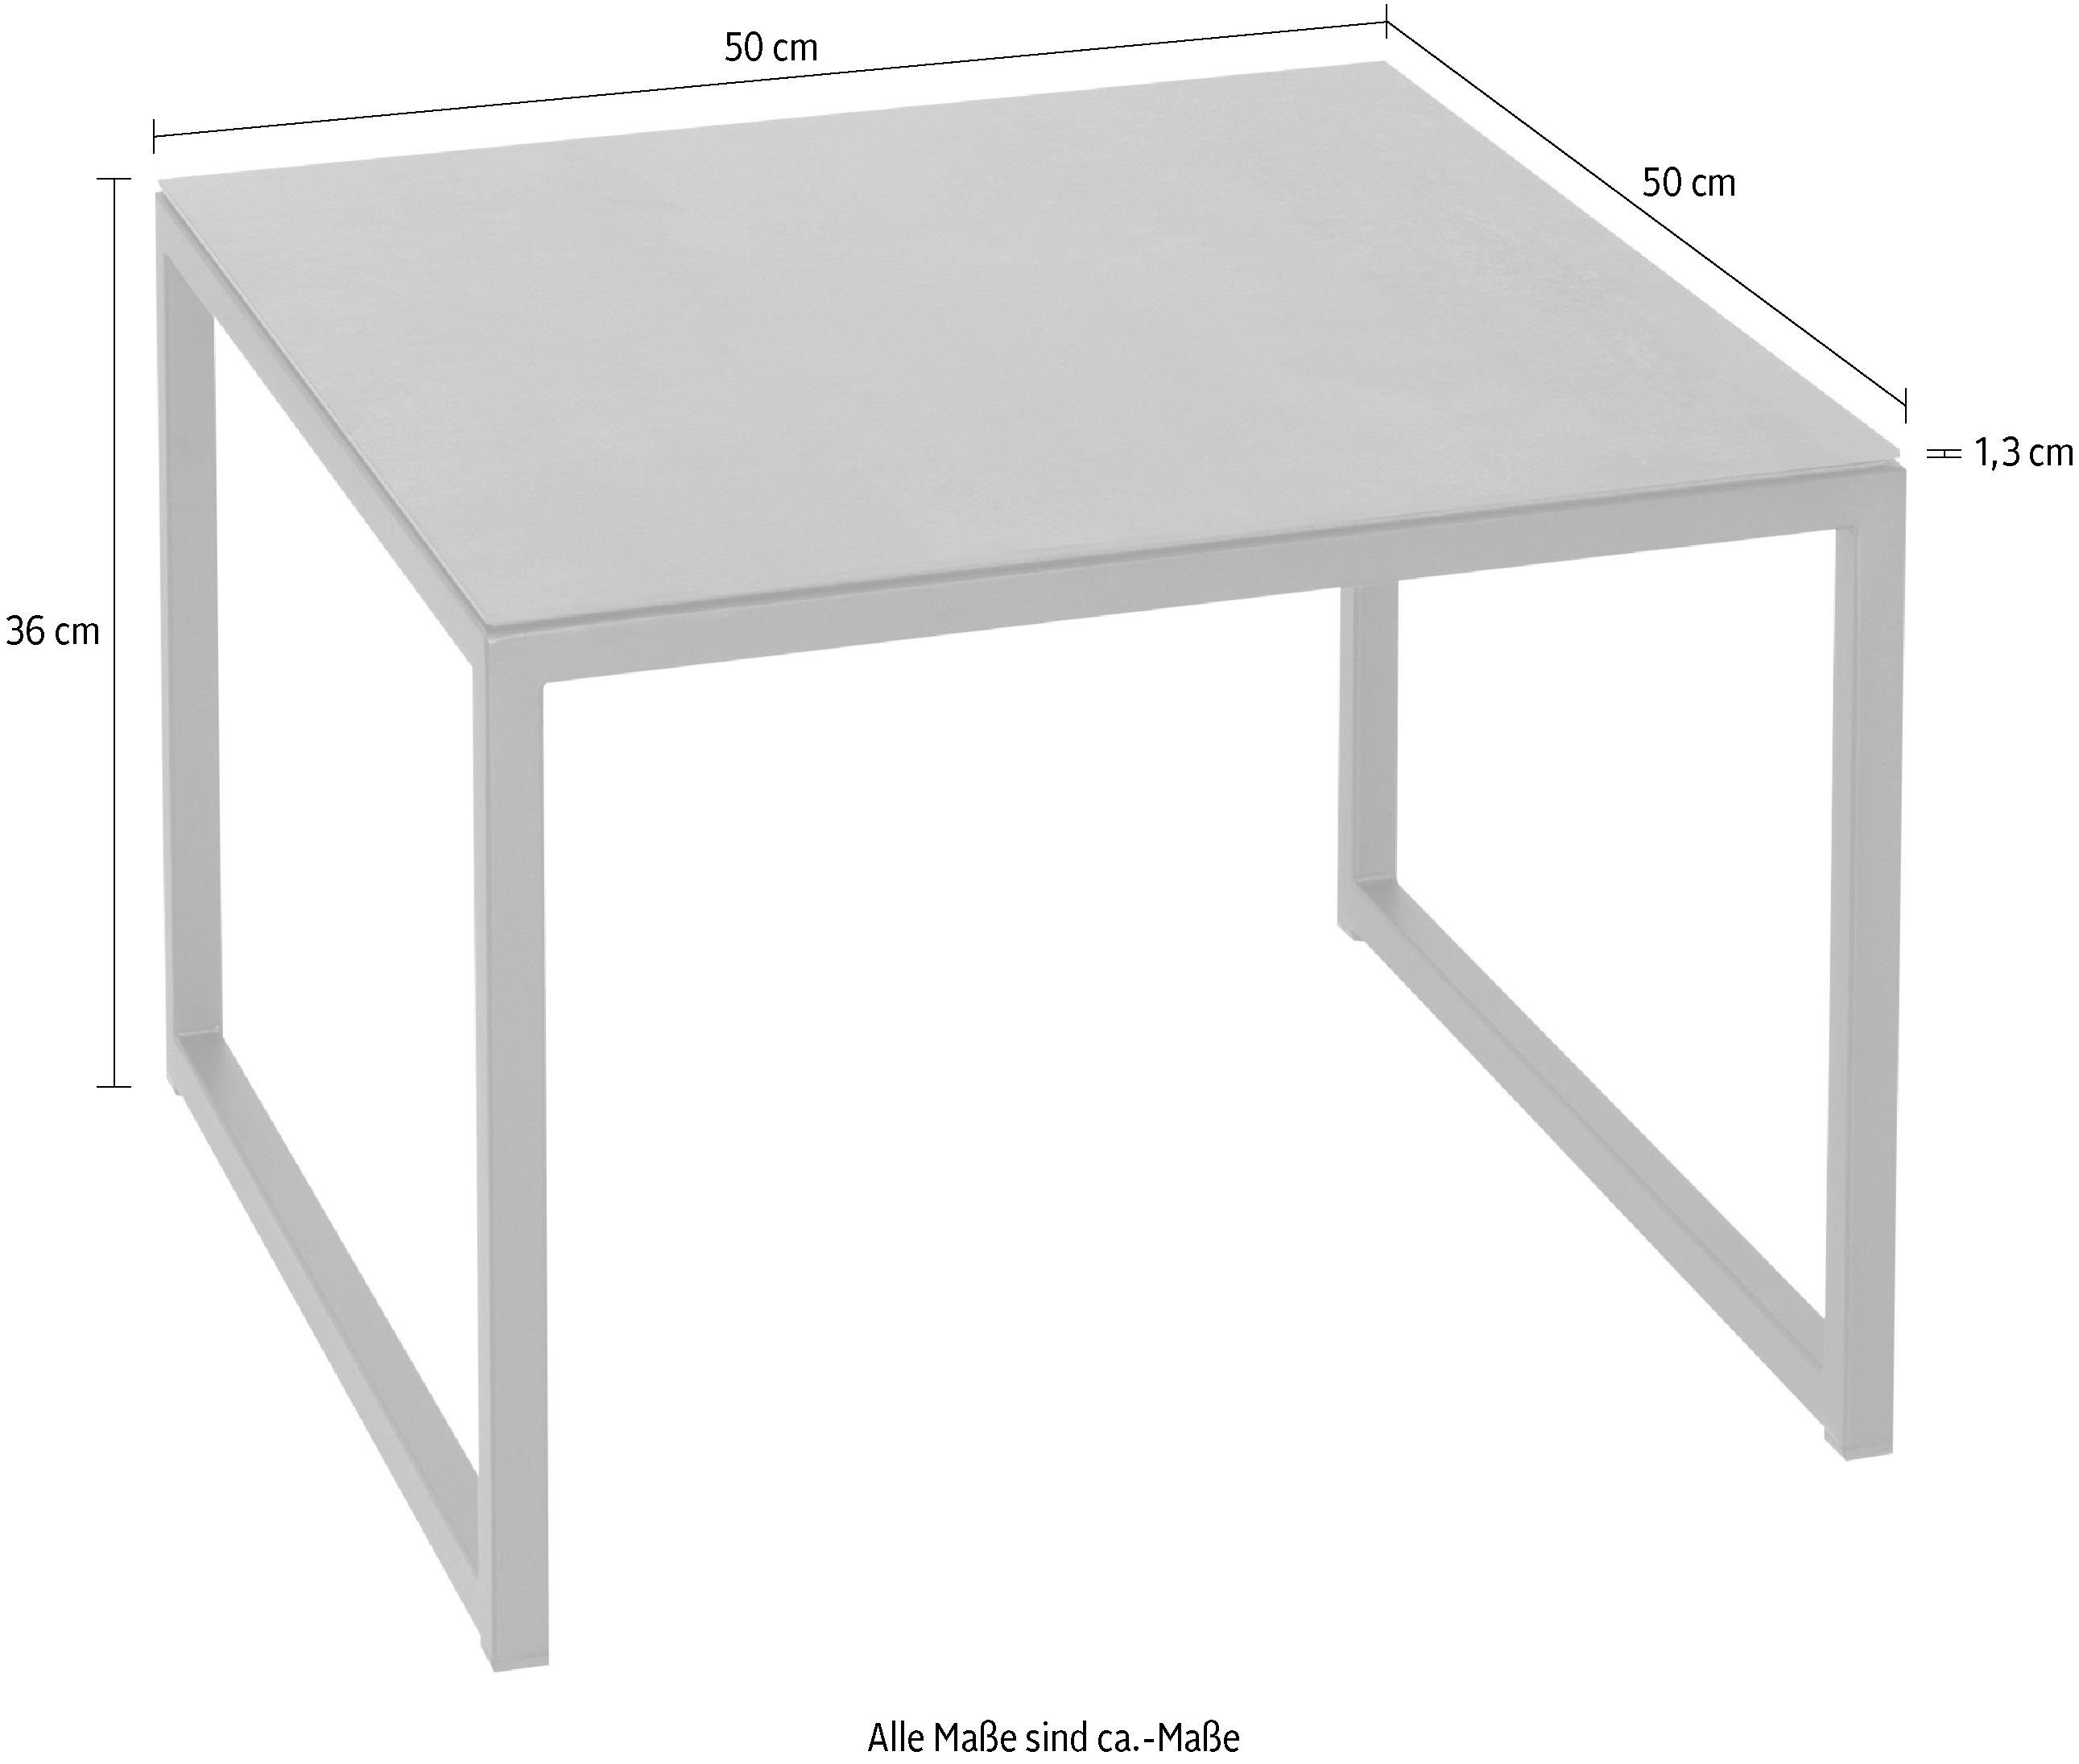 Henke Möbel Beistelltisch, Tischplatte aus Keramik hochwertiger